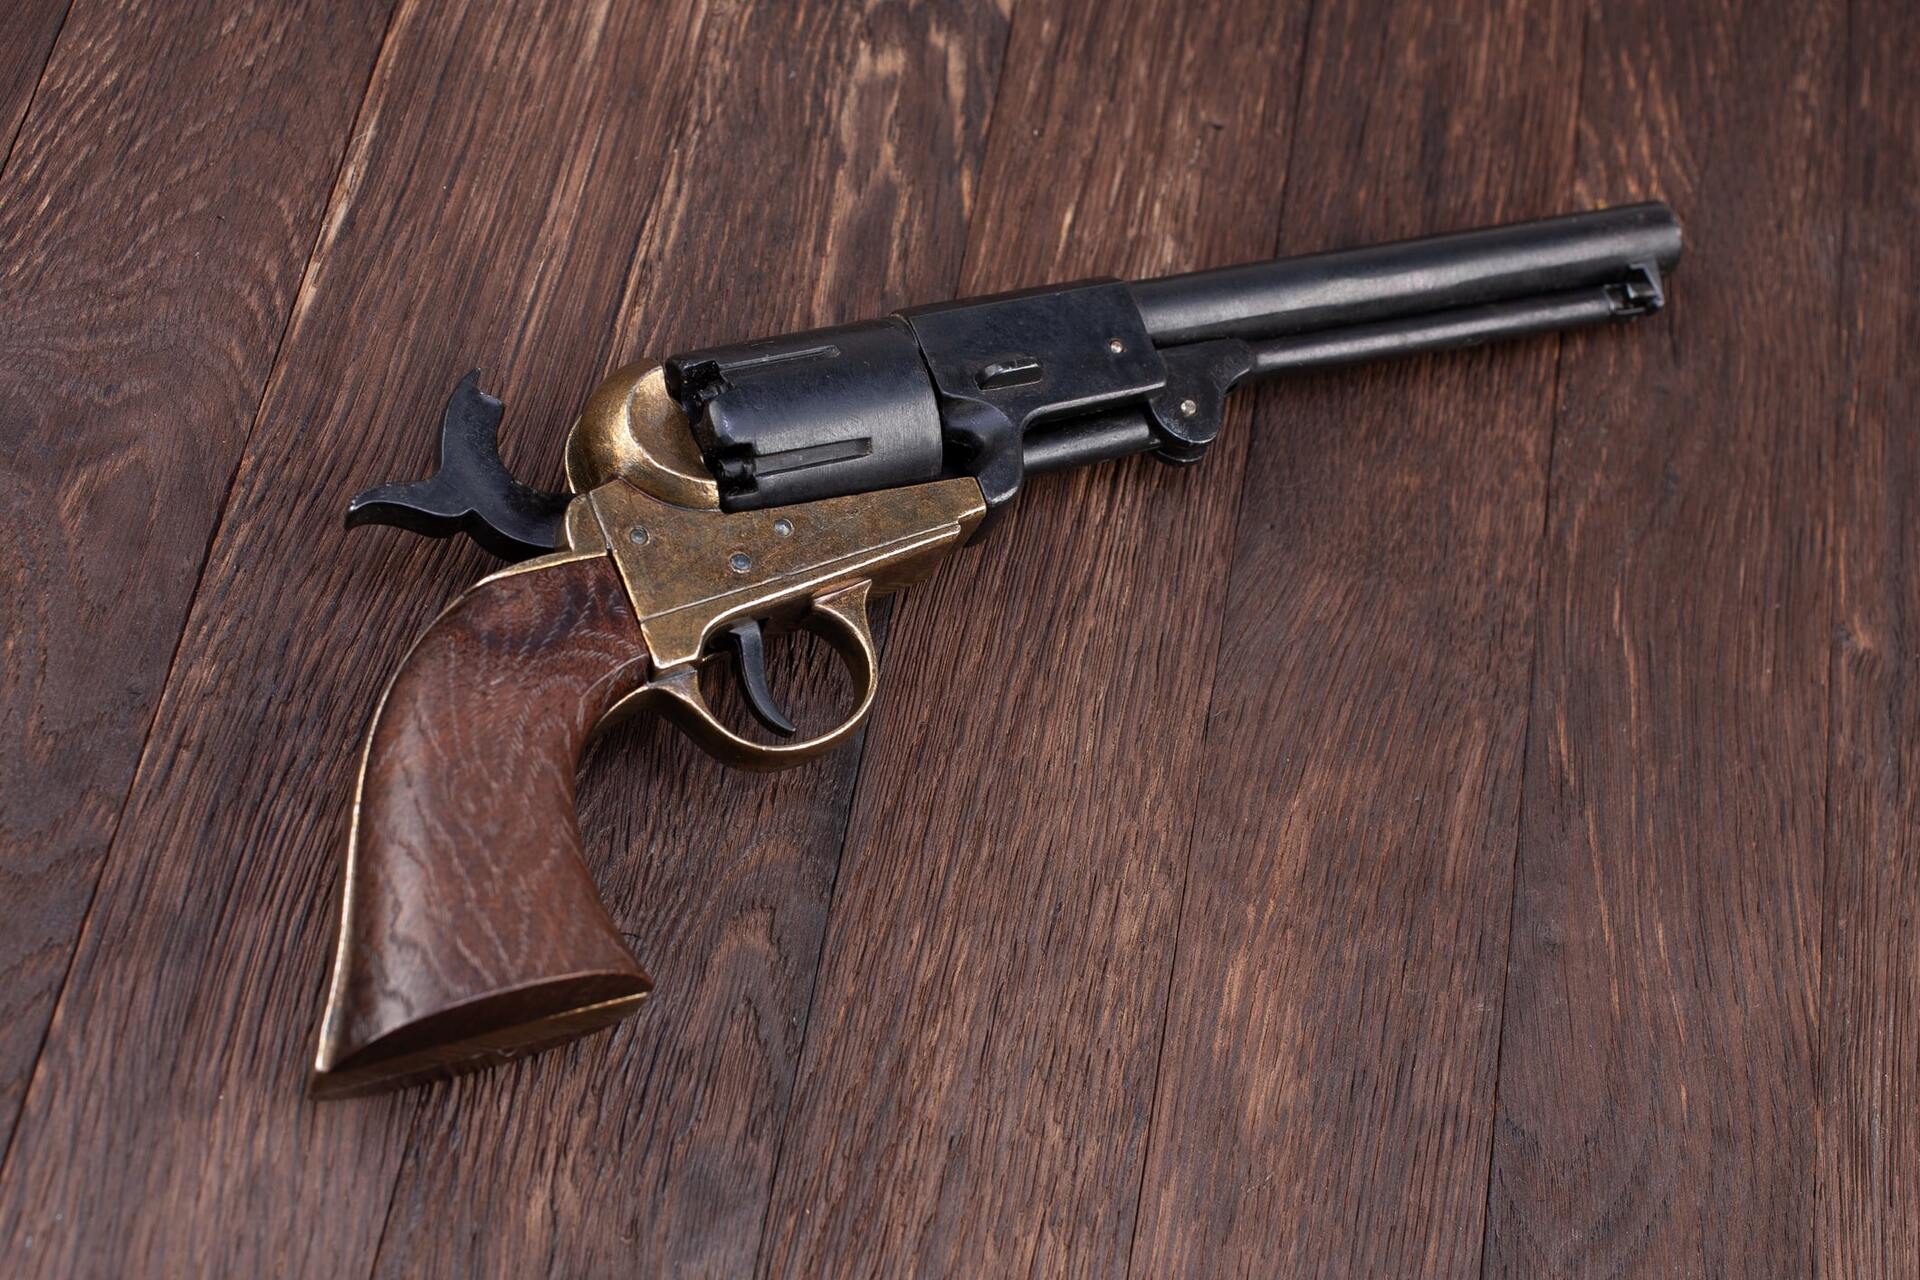 The 1847 Colt Walker: A Texas Pistol